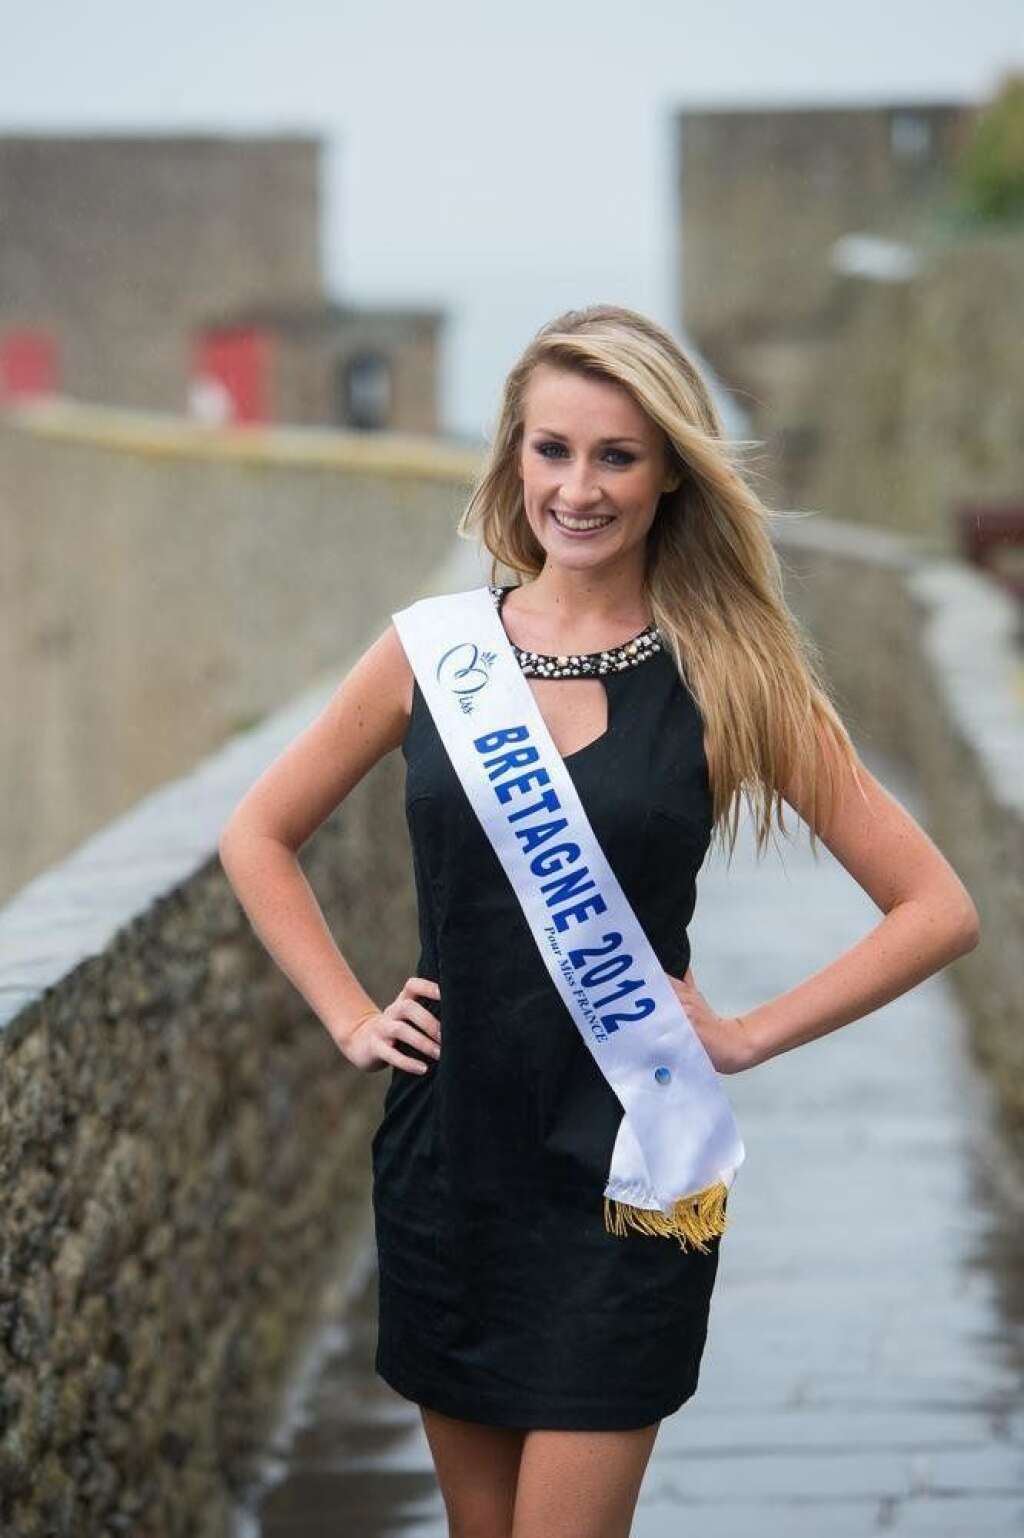 Miss Bretagne - Estelle Sabathier    21 ans - 1,74 m    Etudiante à l'école des métiers de la communication